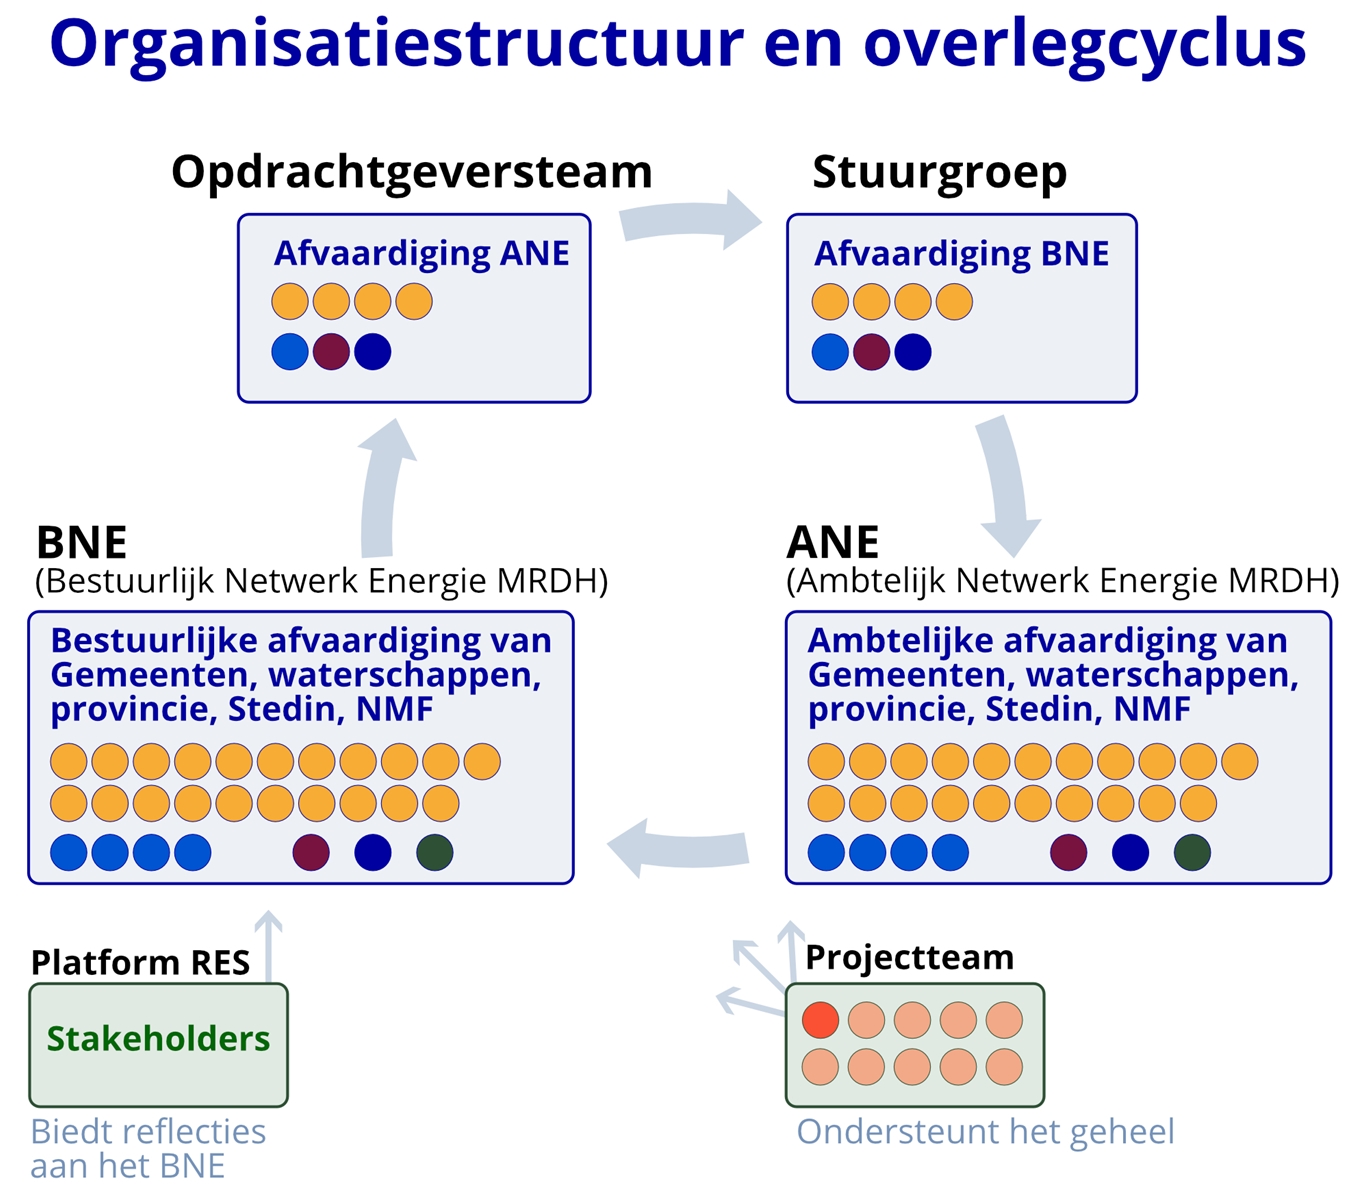 Illustratie organisatiestructuur